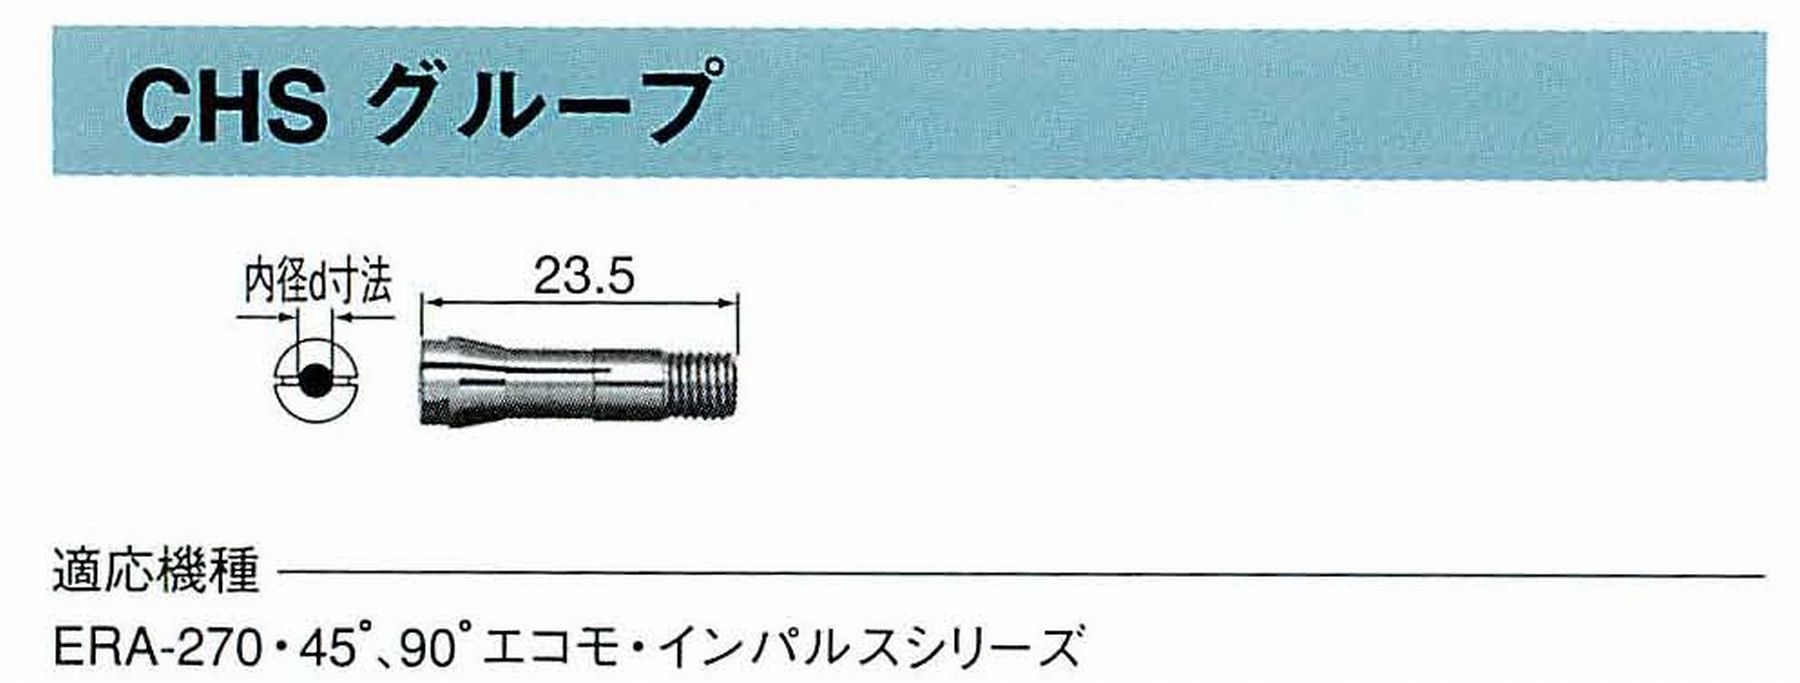 ナカニシ/NAKANISHI コレットチャック コード番号 90516 型式 CHS-1.6 内径:Φ1.6